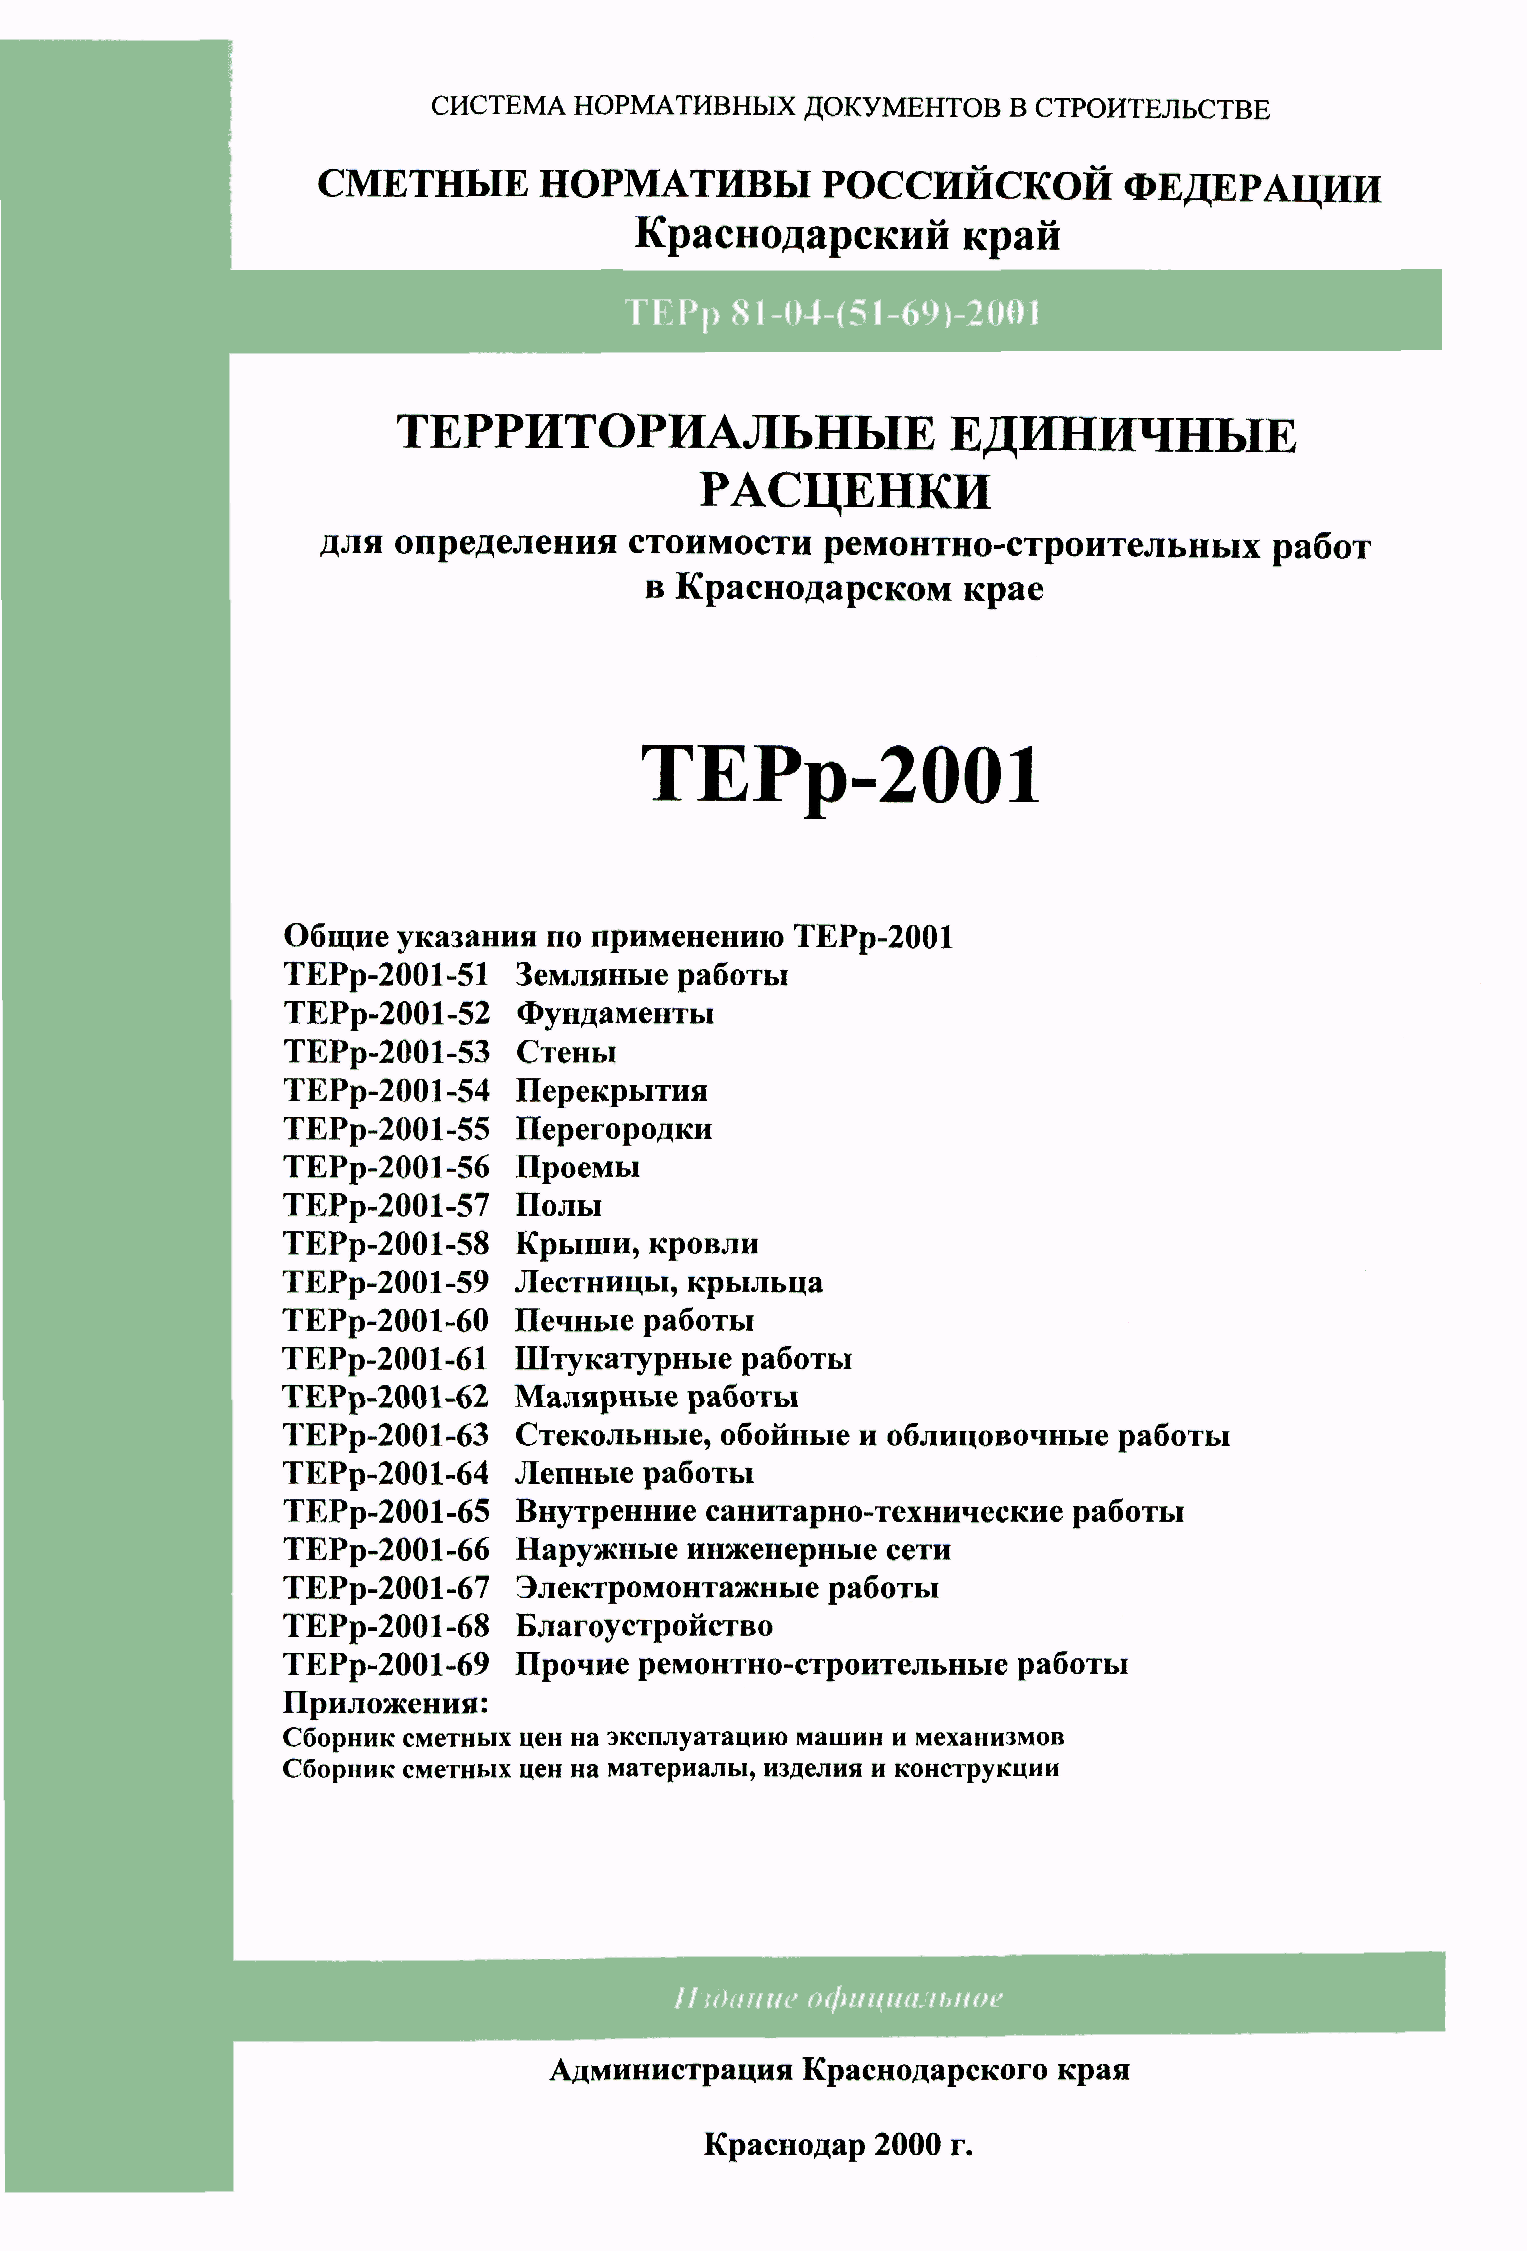 ТЕРр Краснодарского края 2001-68